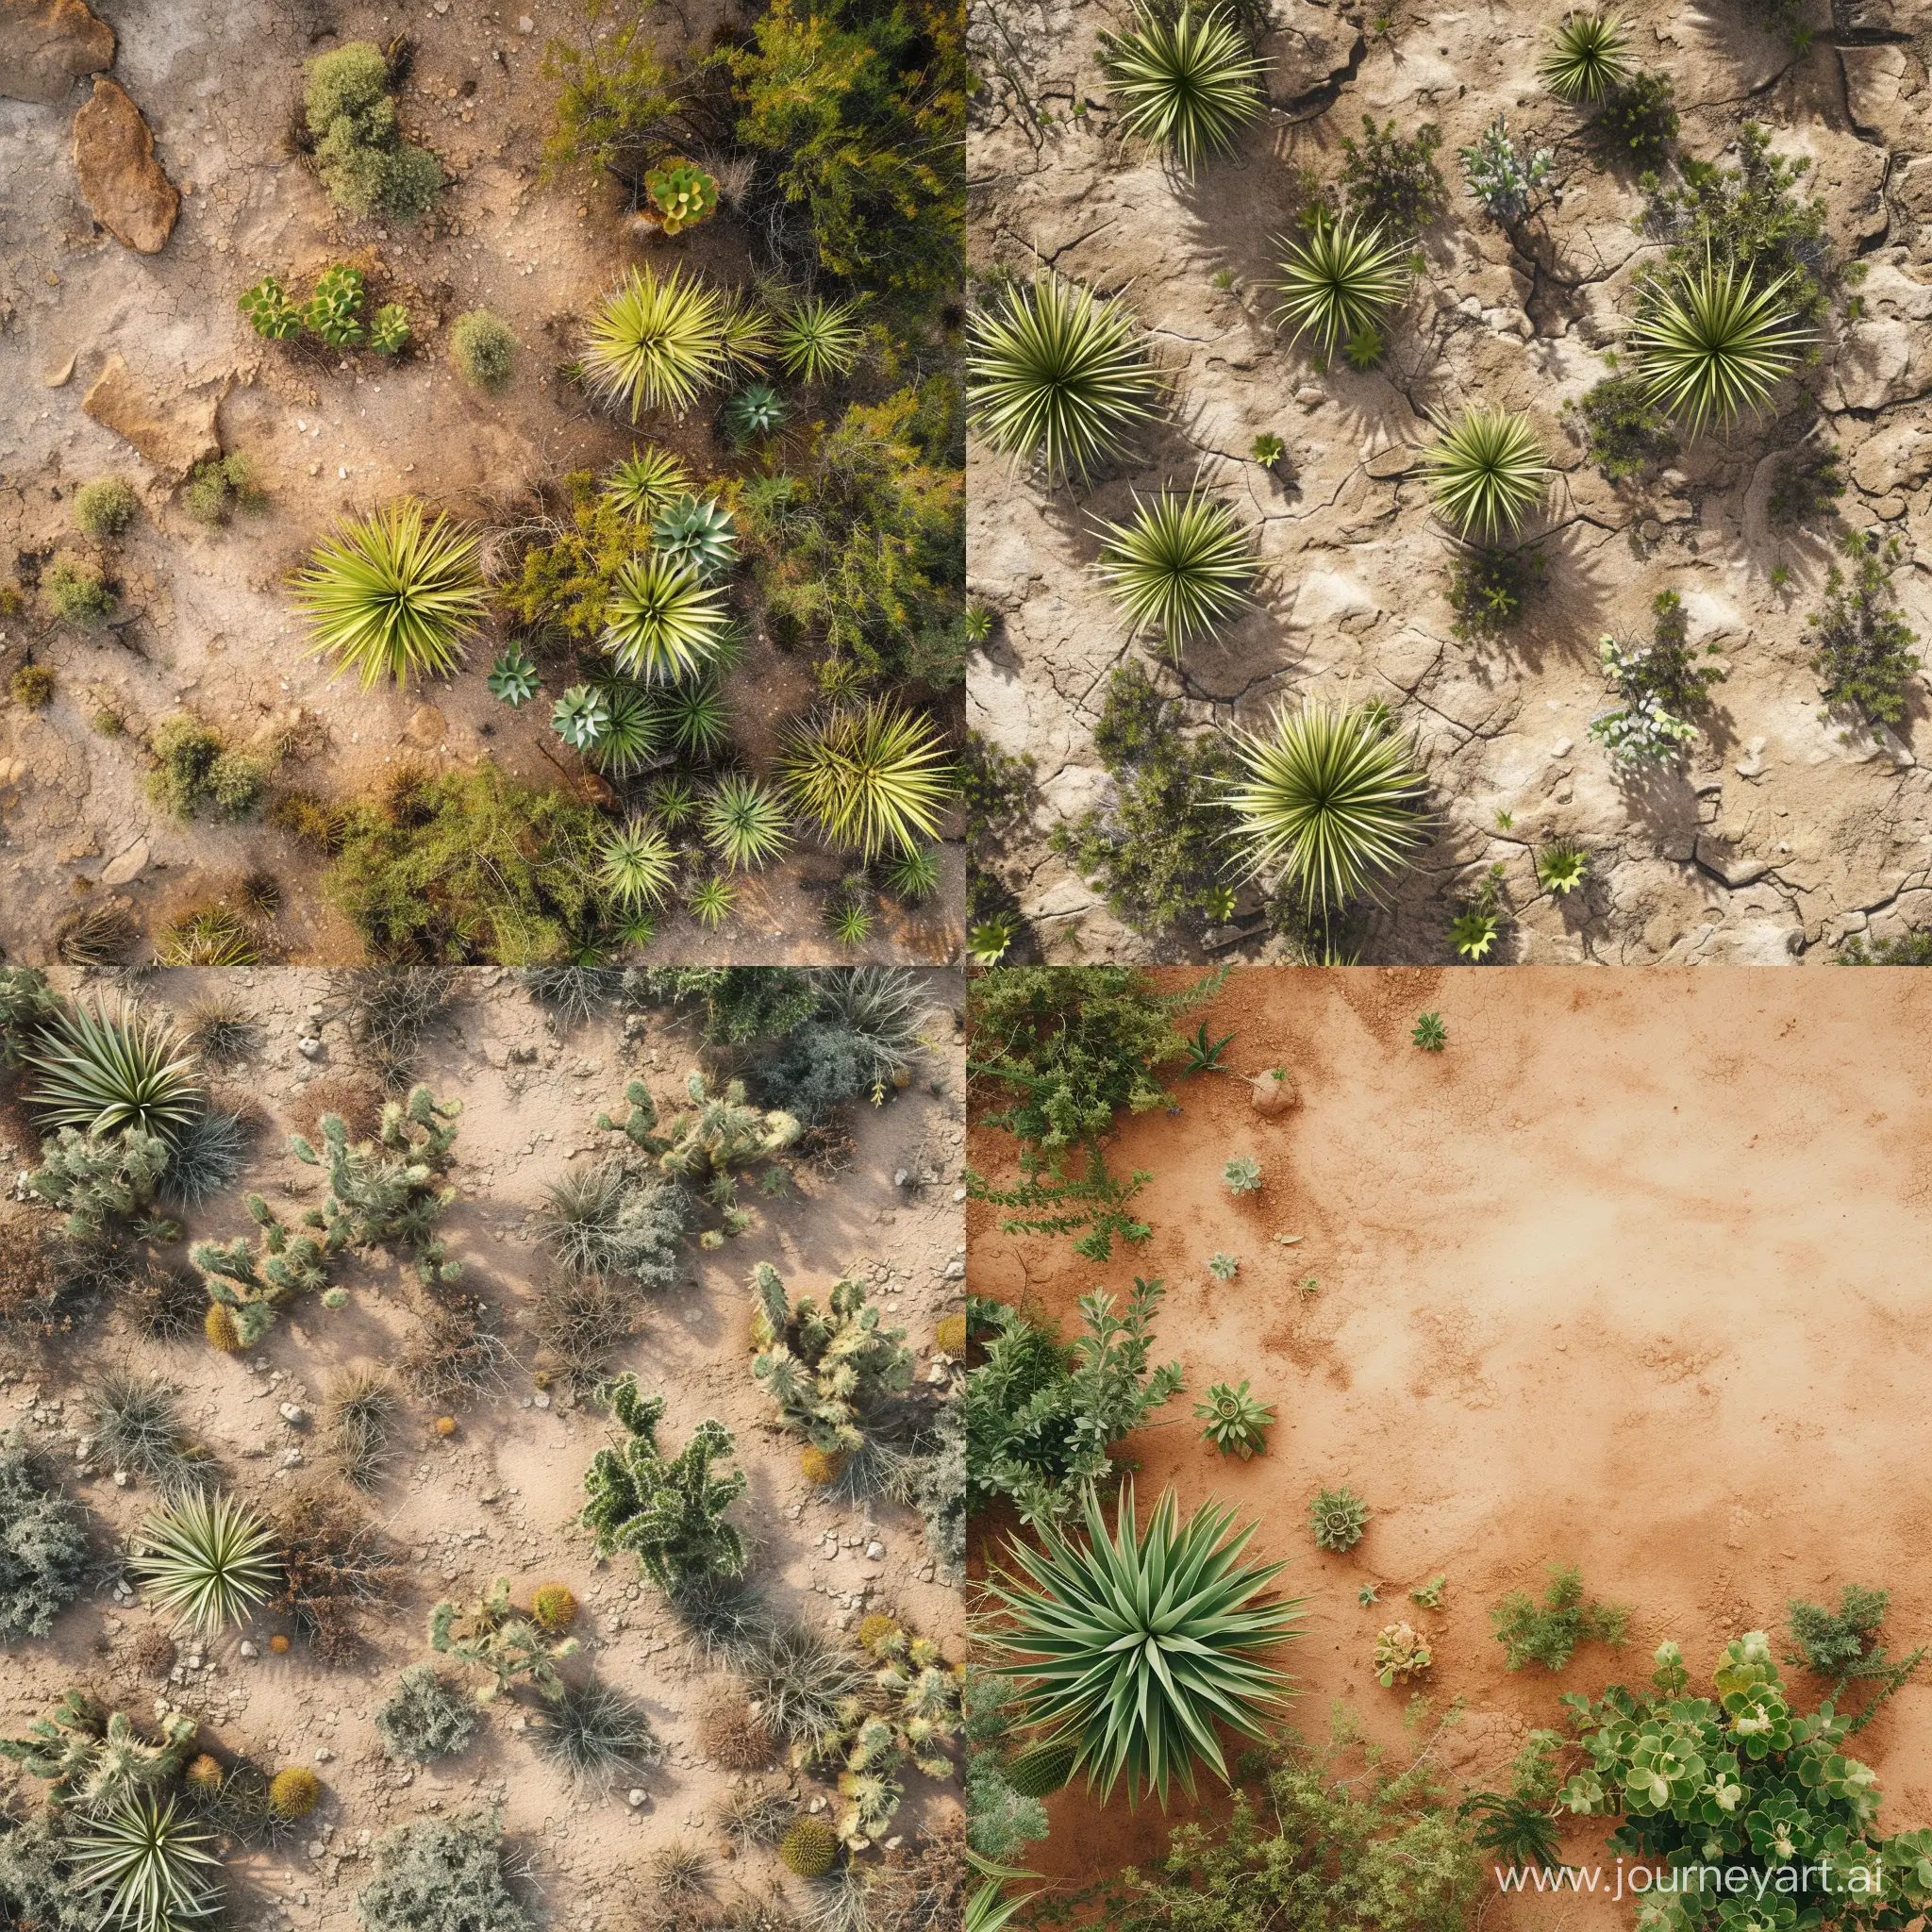 Aerial-View-of-Lush-Desert-Vegetation